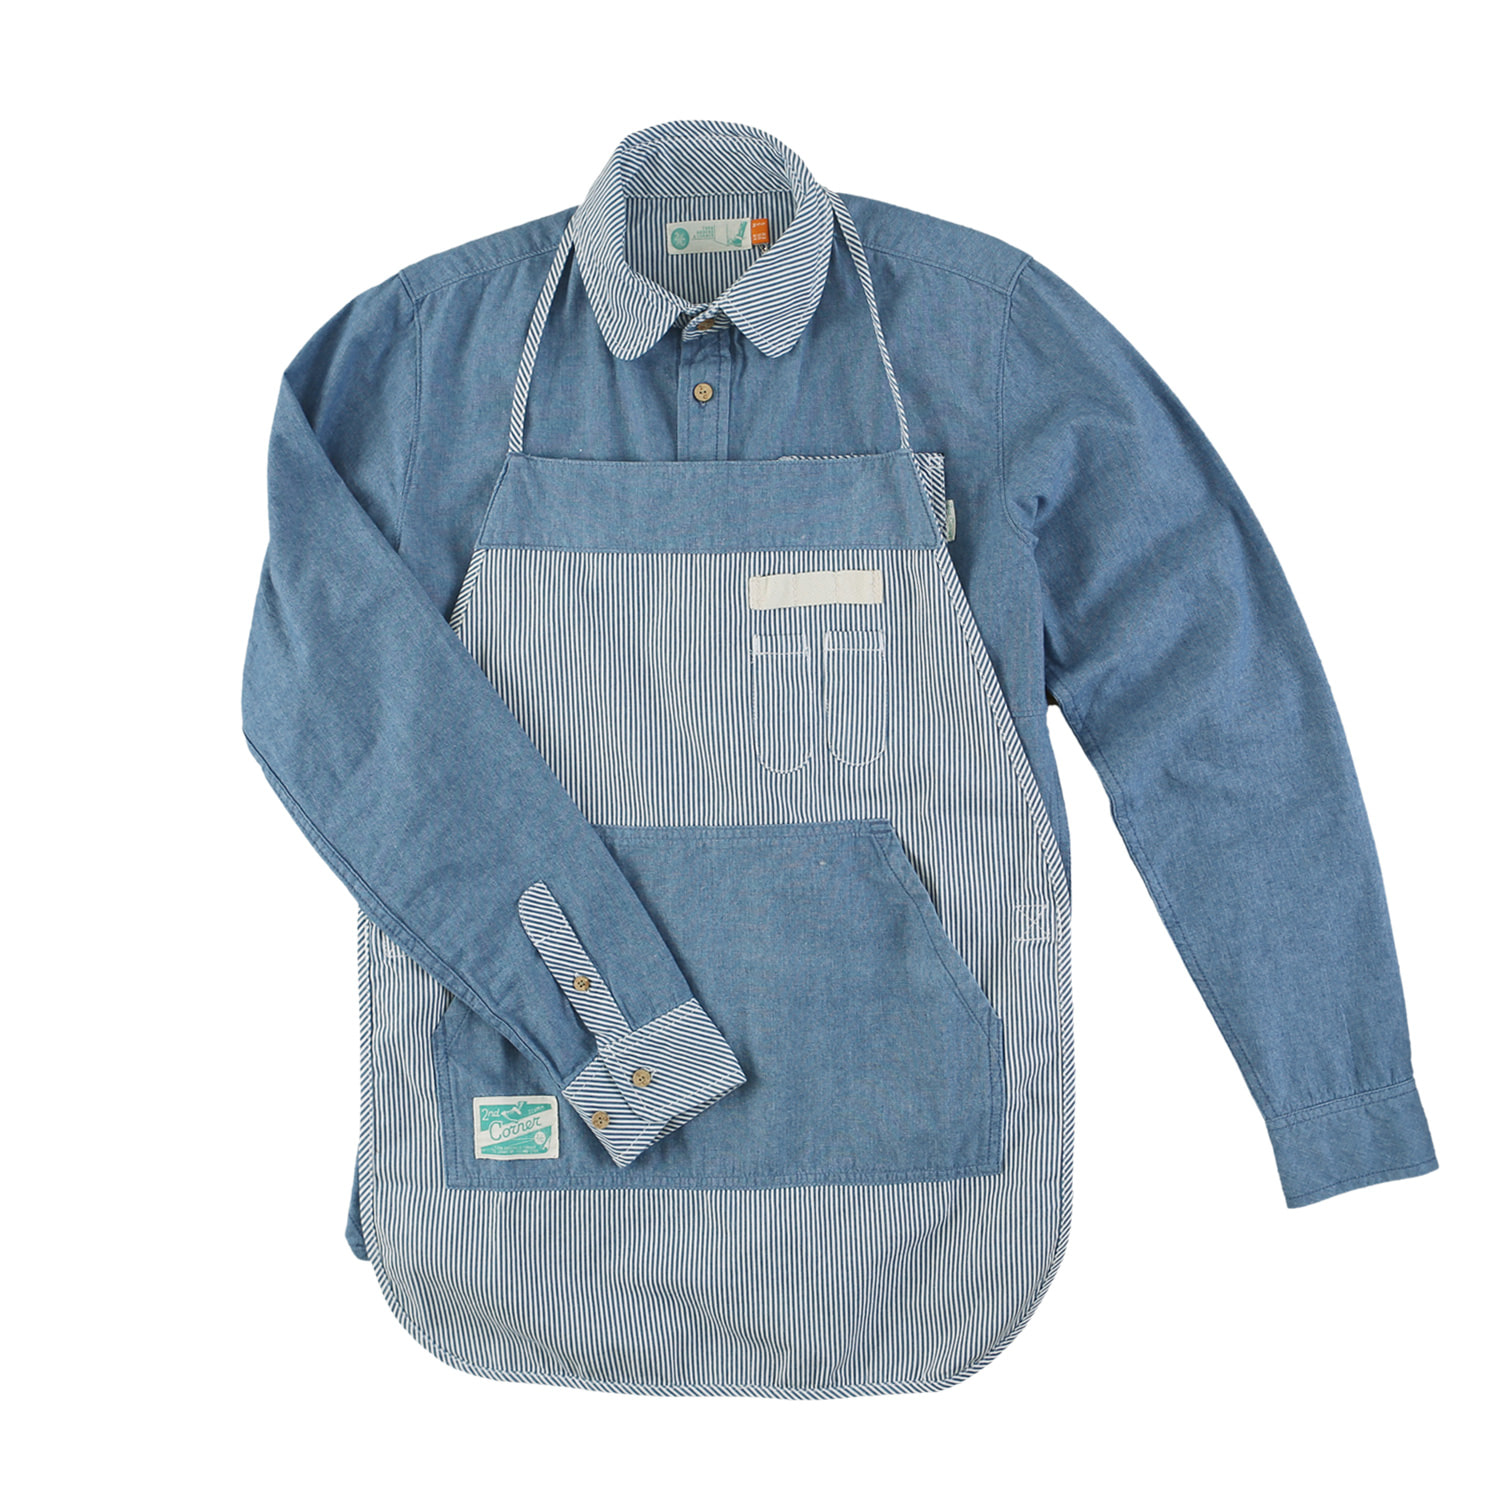 세컨드코너 2C 남성 순면 데님 캠퍼 셔츠 + 에이프런 / 봄-가을 / 아웃도어/캐쥬얼 셔츠 Steward - L.Blue